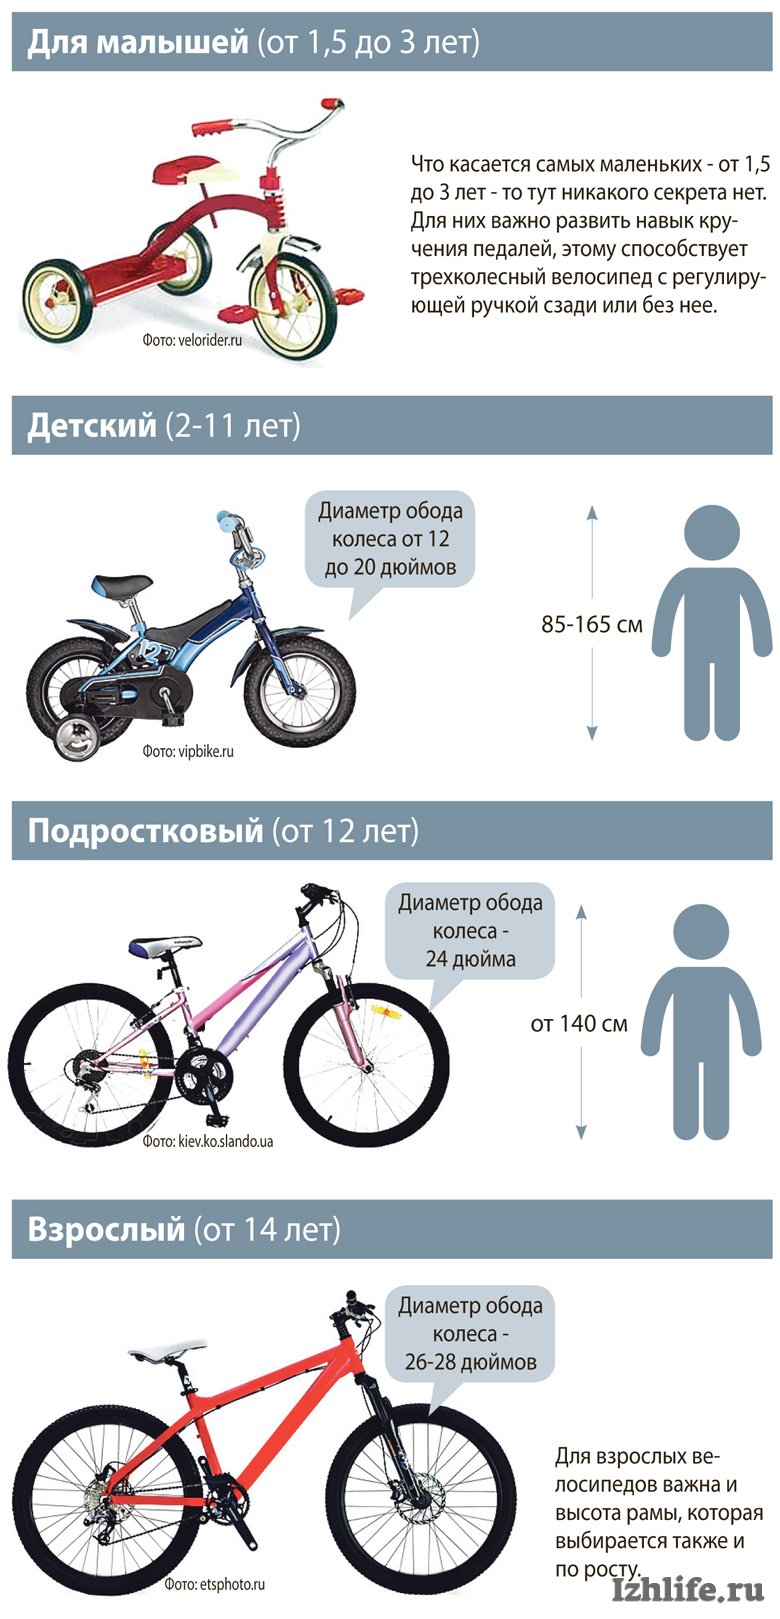 Как выбрать велосипед по росту ребенка таблица. Размер колес детского велосипеда по росту. Как выбрать велосипед для ребенка 4 года по росту и весу таблица. Таблица подбора велосипеда по росту ребенка рамы. Как выбрать раму для велосипеда по росту таблица.